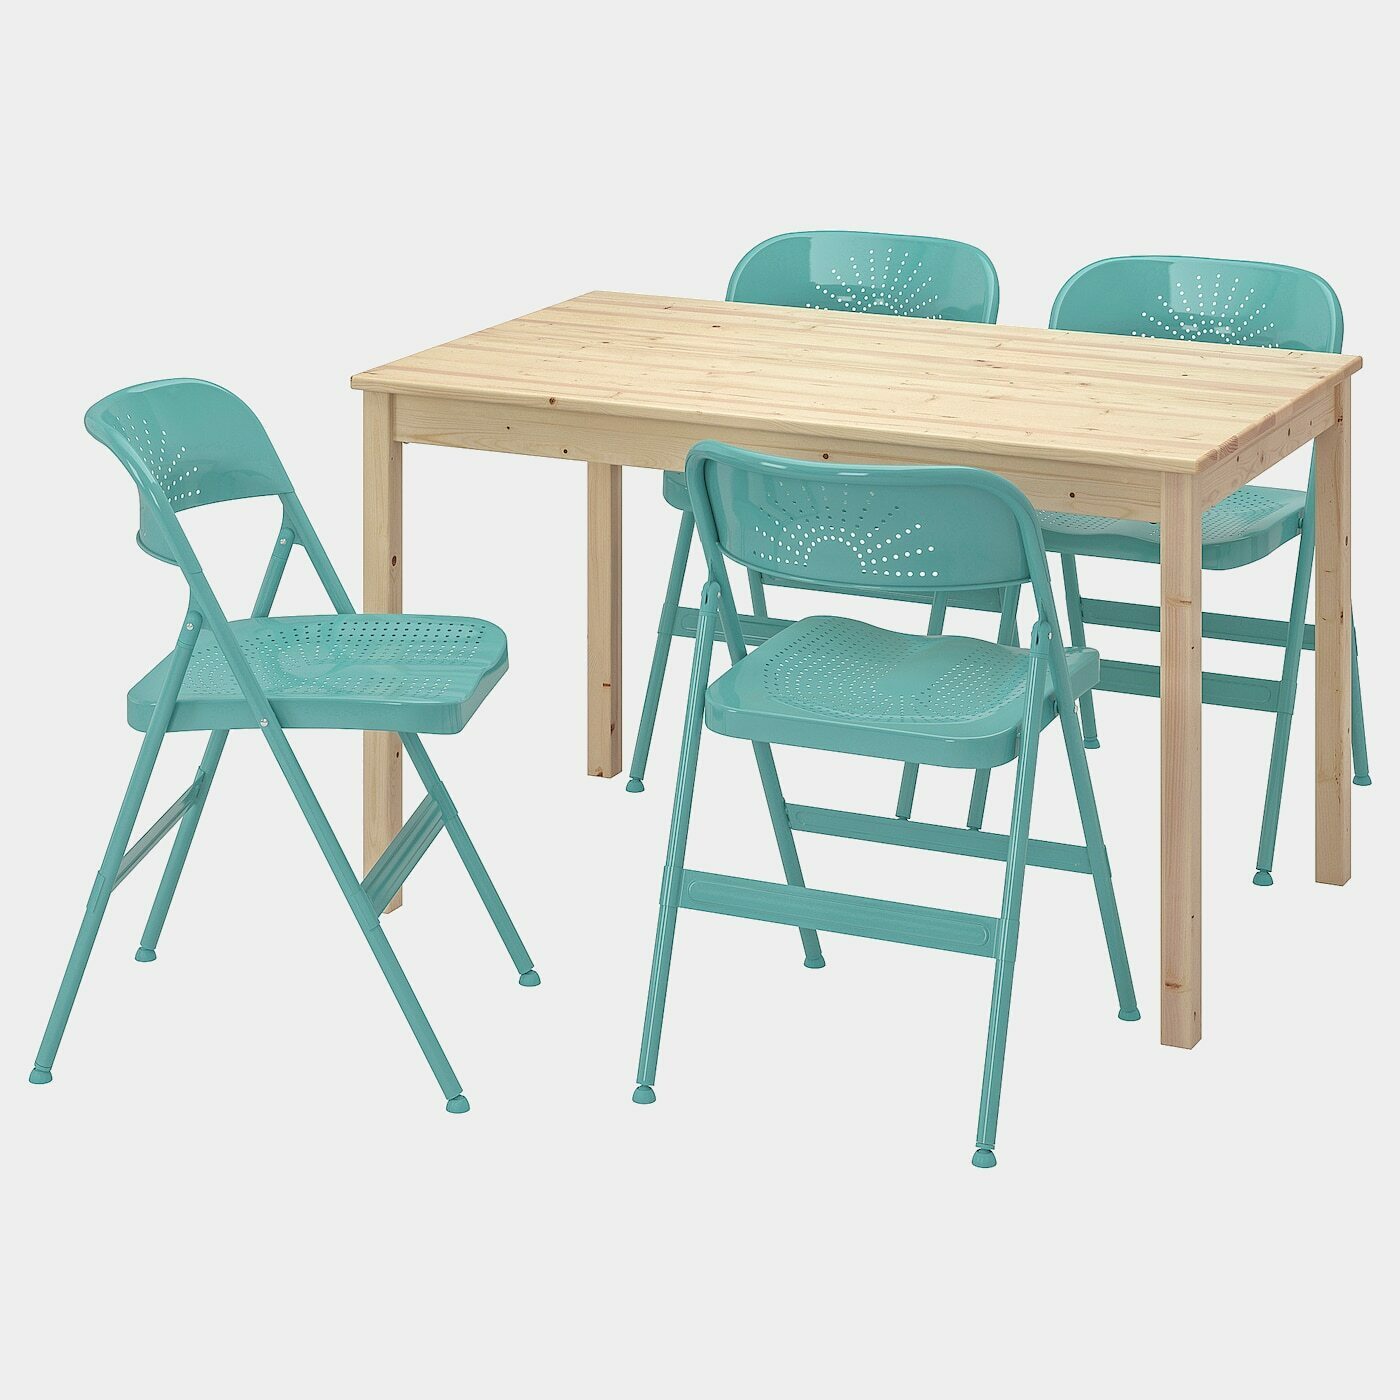 INGO / FRODE Tisch und 4 Stühle  - Essplatzgruppe - Möbel Ideen für dein Zuhause von Home Trends. Möbel Trends von Social Media Influencer für dein Skandi Zuhause.